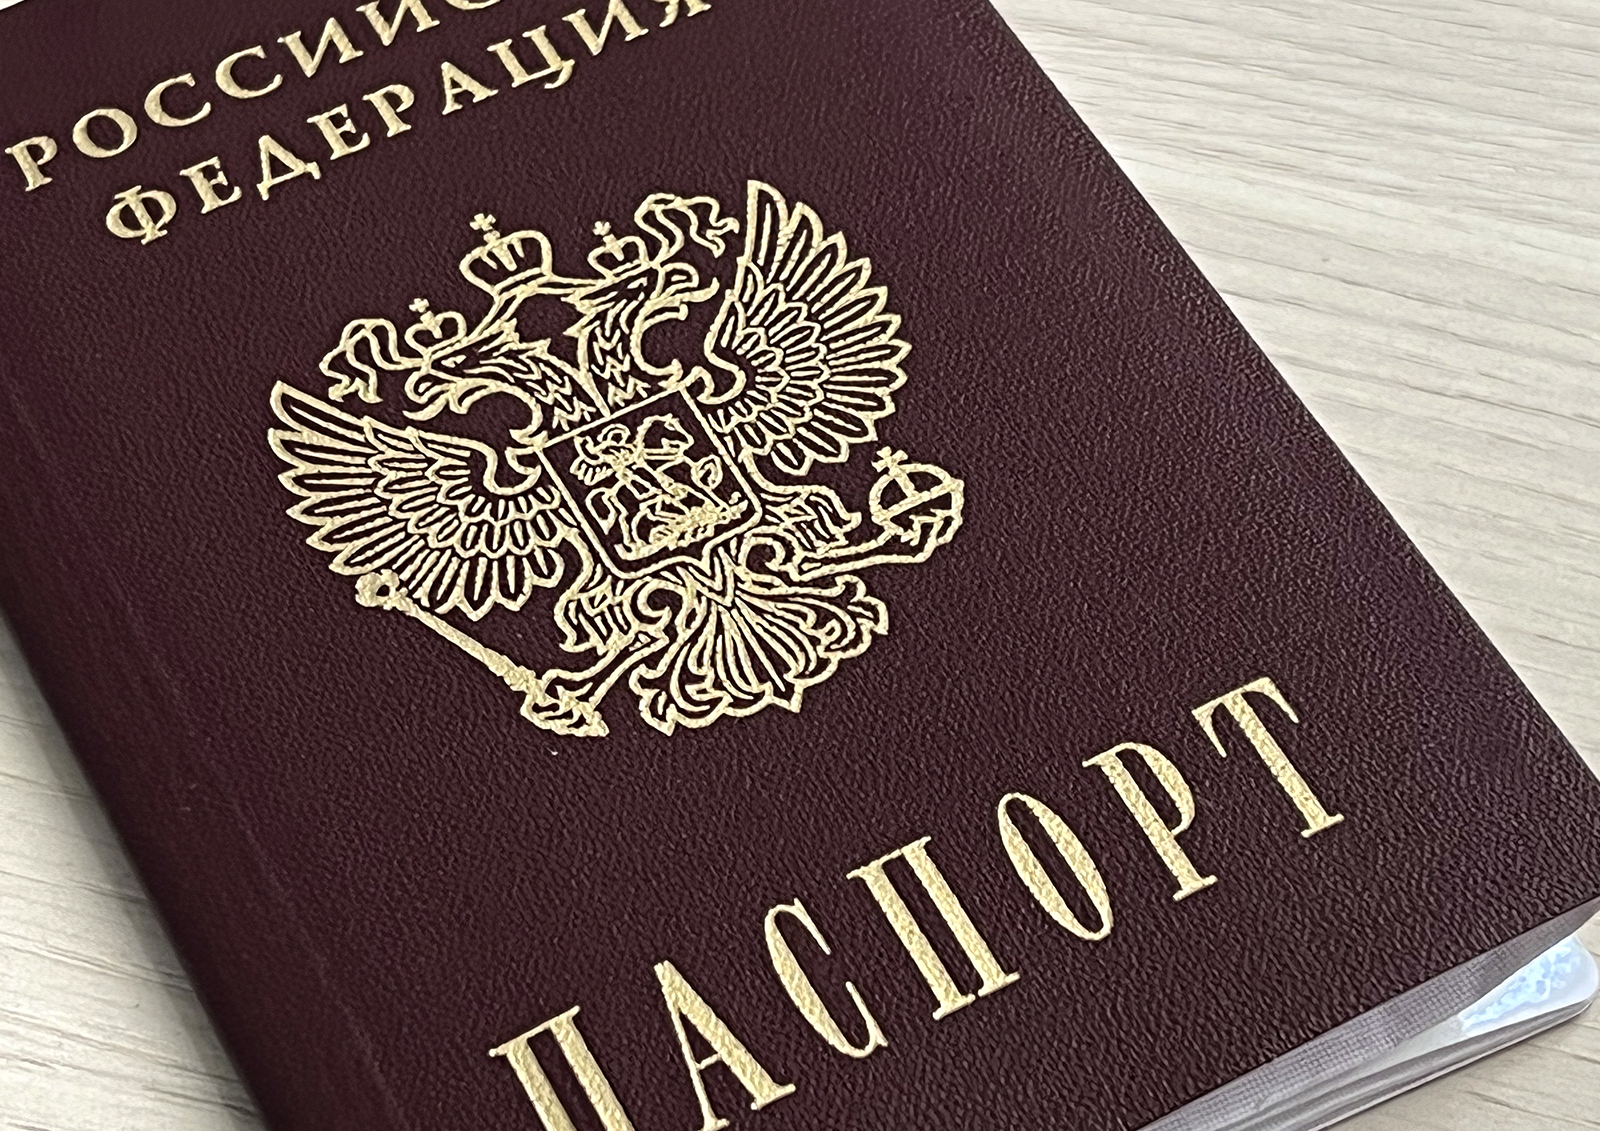 Юрист Крюков рассказал, что делать при потере паспорта за границей